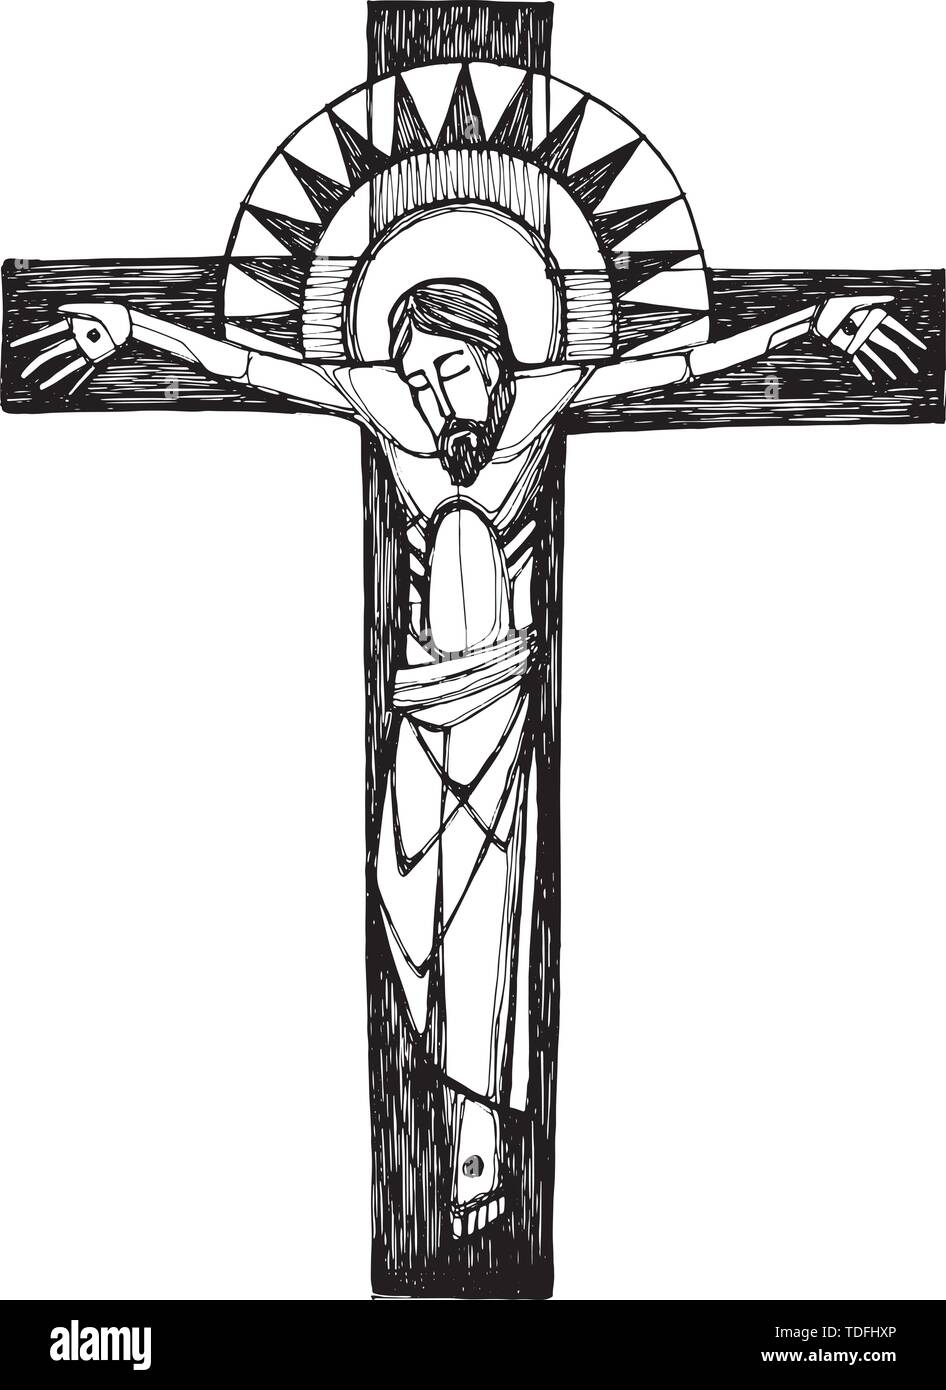 Ilustración Vectorial Dibujada A Mano O Un Dibujo De Jesucristo En La Cruz Imagen Vector De 4239